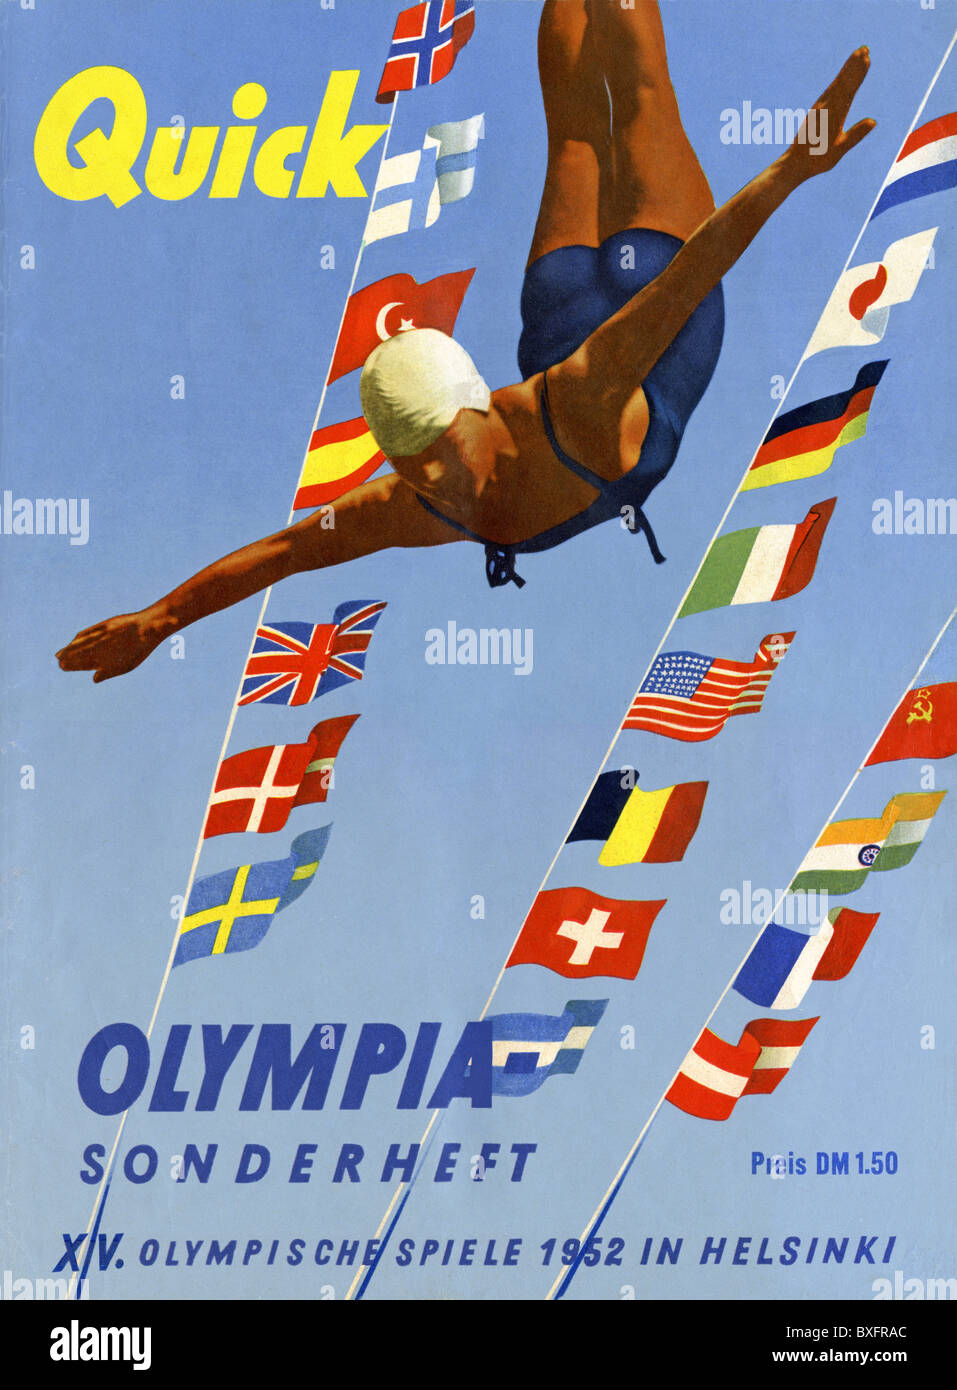 Presse, Schnellzeitschrift, Olympia Sonderheft, XV Olympische Spiele 1952 in Helsinki, Deckblatt, Deutschland, 1952, Zusatzrechte-Clearences-not available Stockfoto